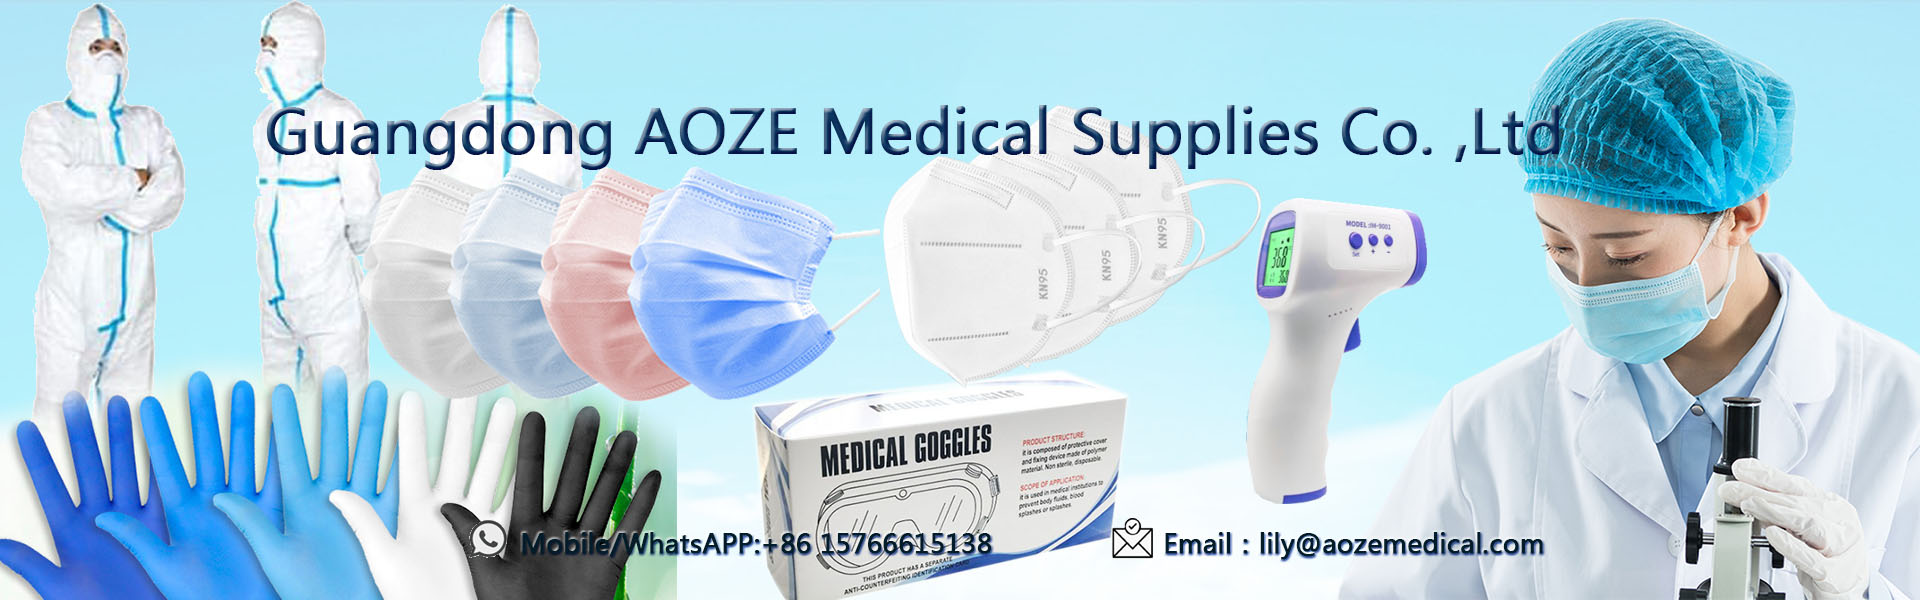 Enstaka engångsmask, kn95 ansiktsmask, kirurgisk ansiktsmask,Guangdong AOZE Medical Supplies Co.,Ltd